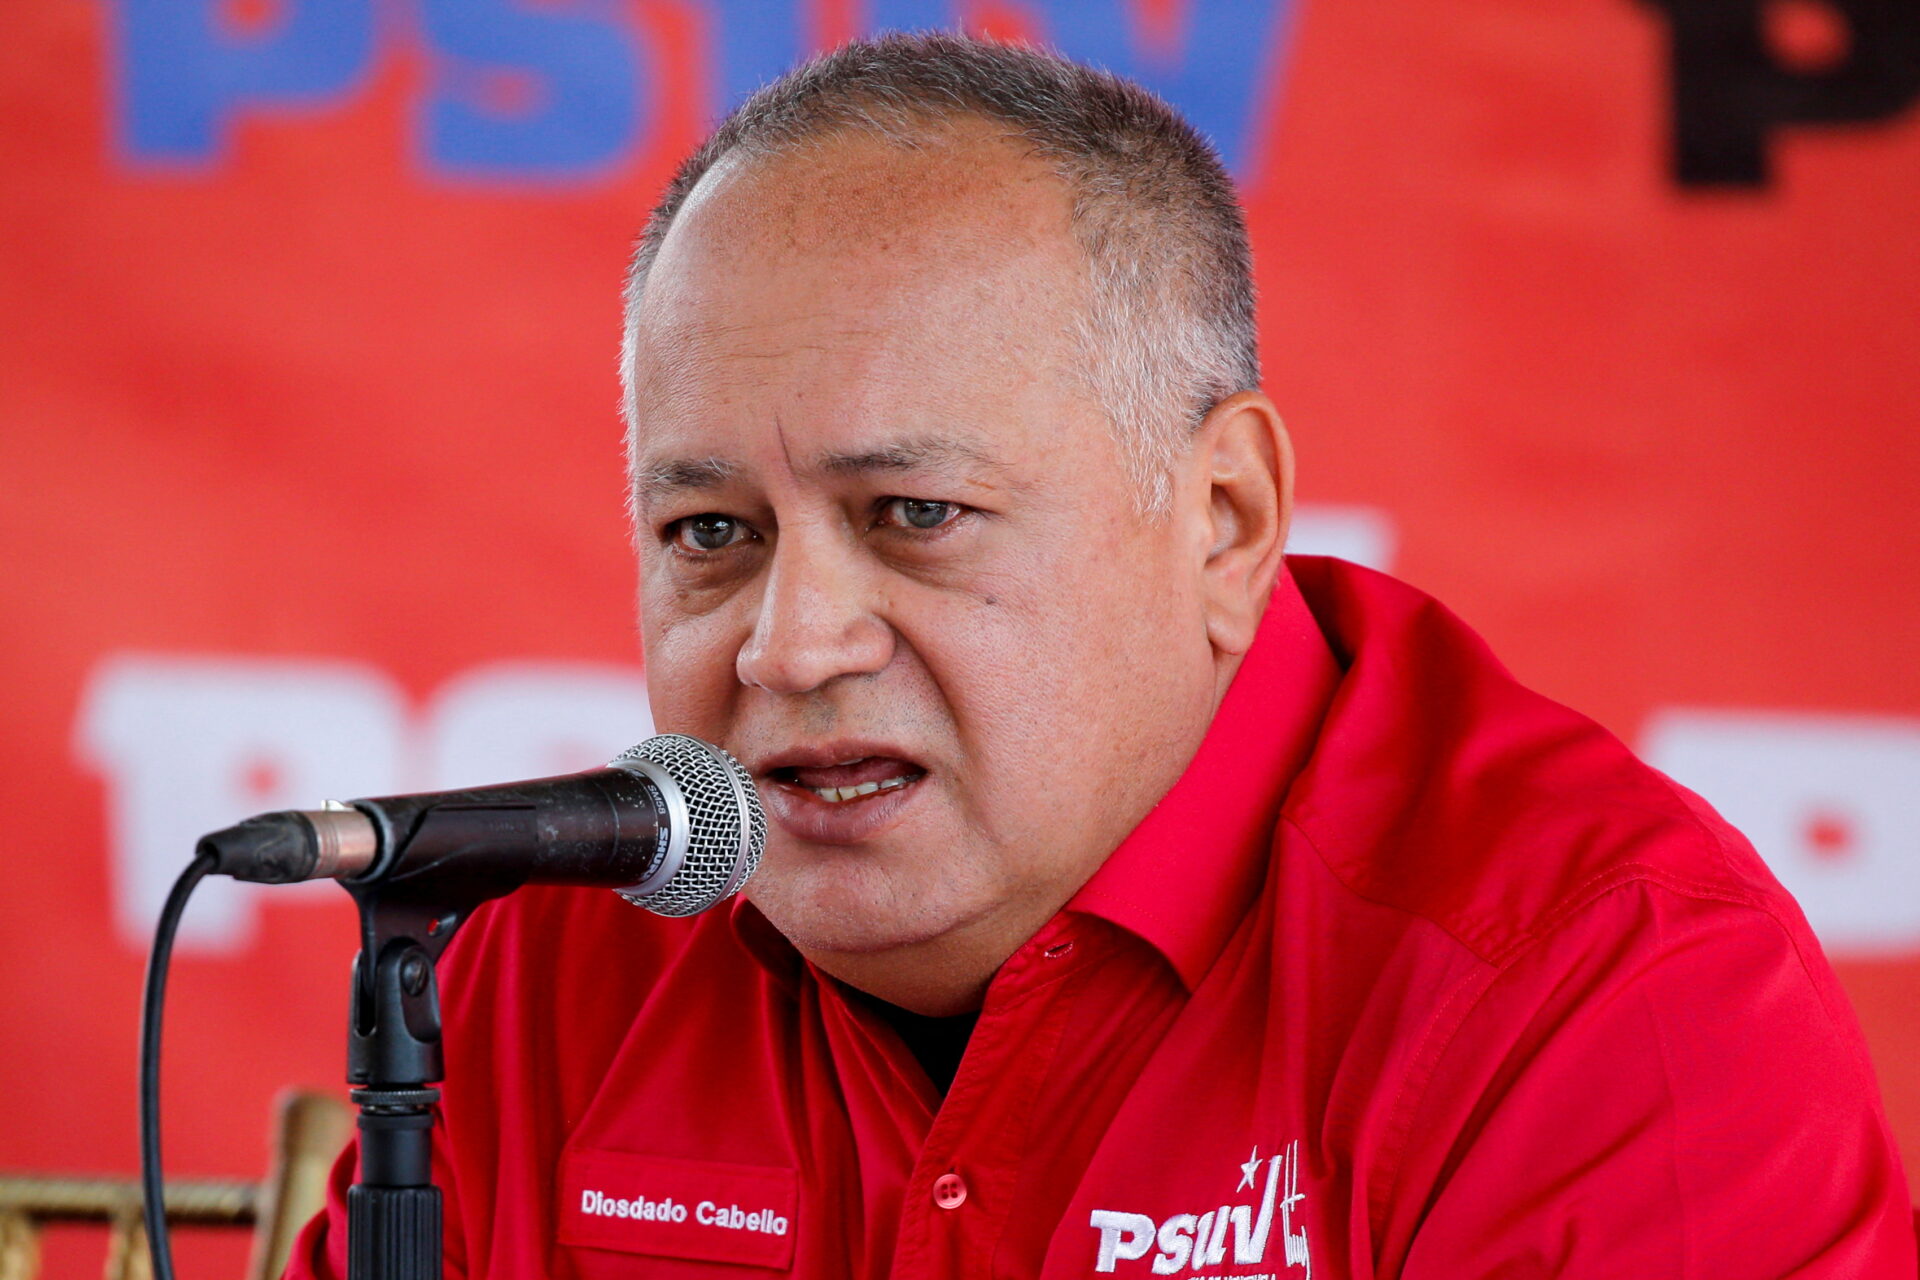 El oficialismo venezolano y partido izquierdista dominicano acuerdan cooperar